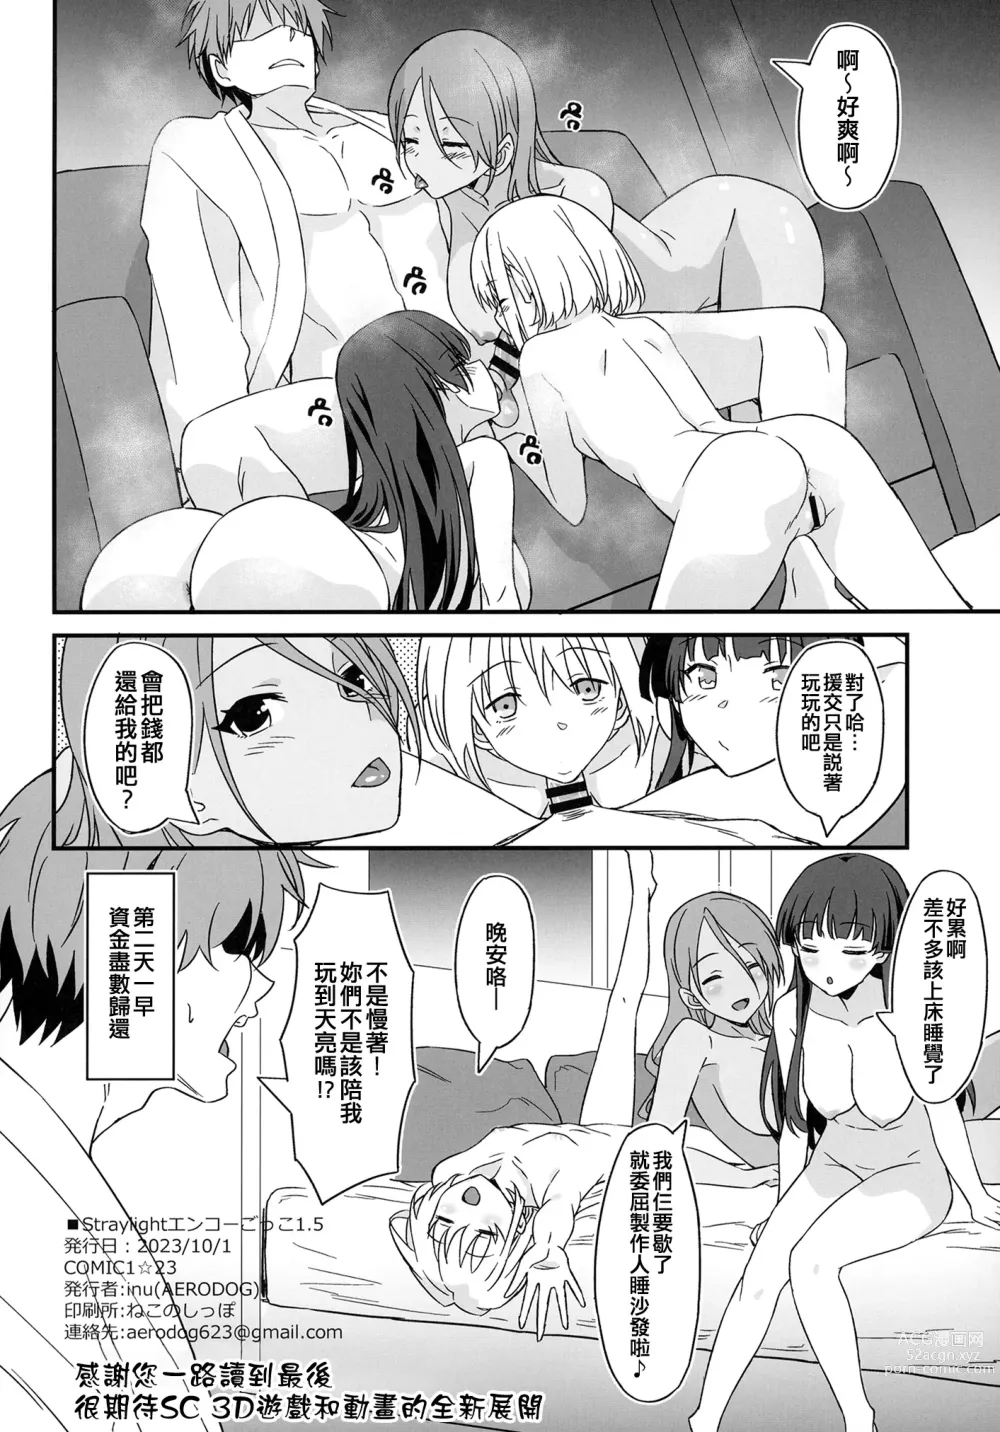 Page 22 of doujinshi Straylight Enkou Gokko 1.5